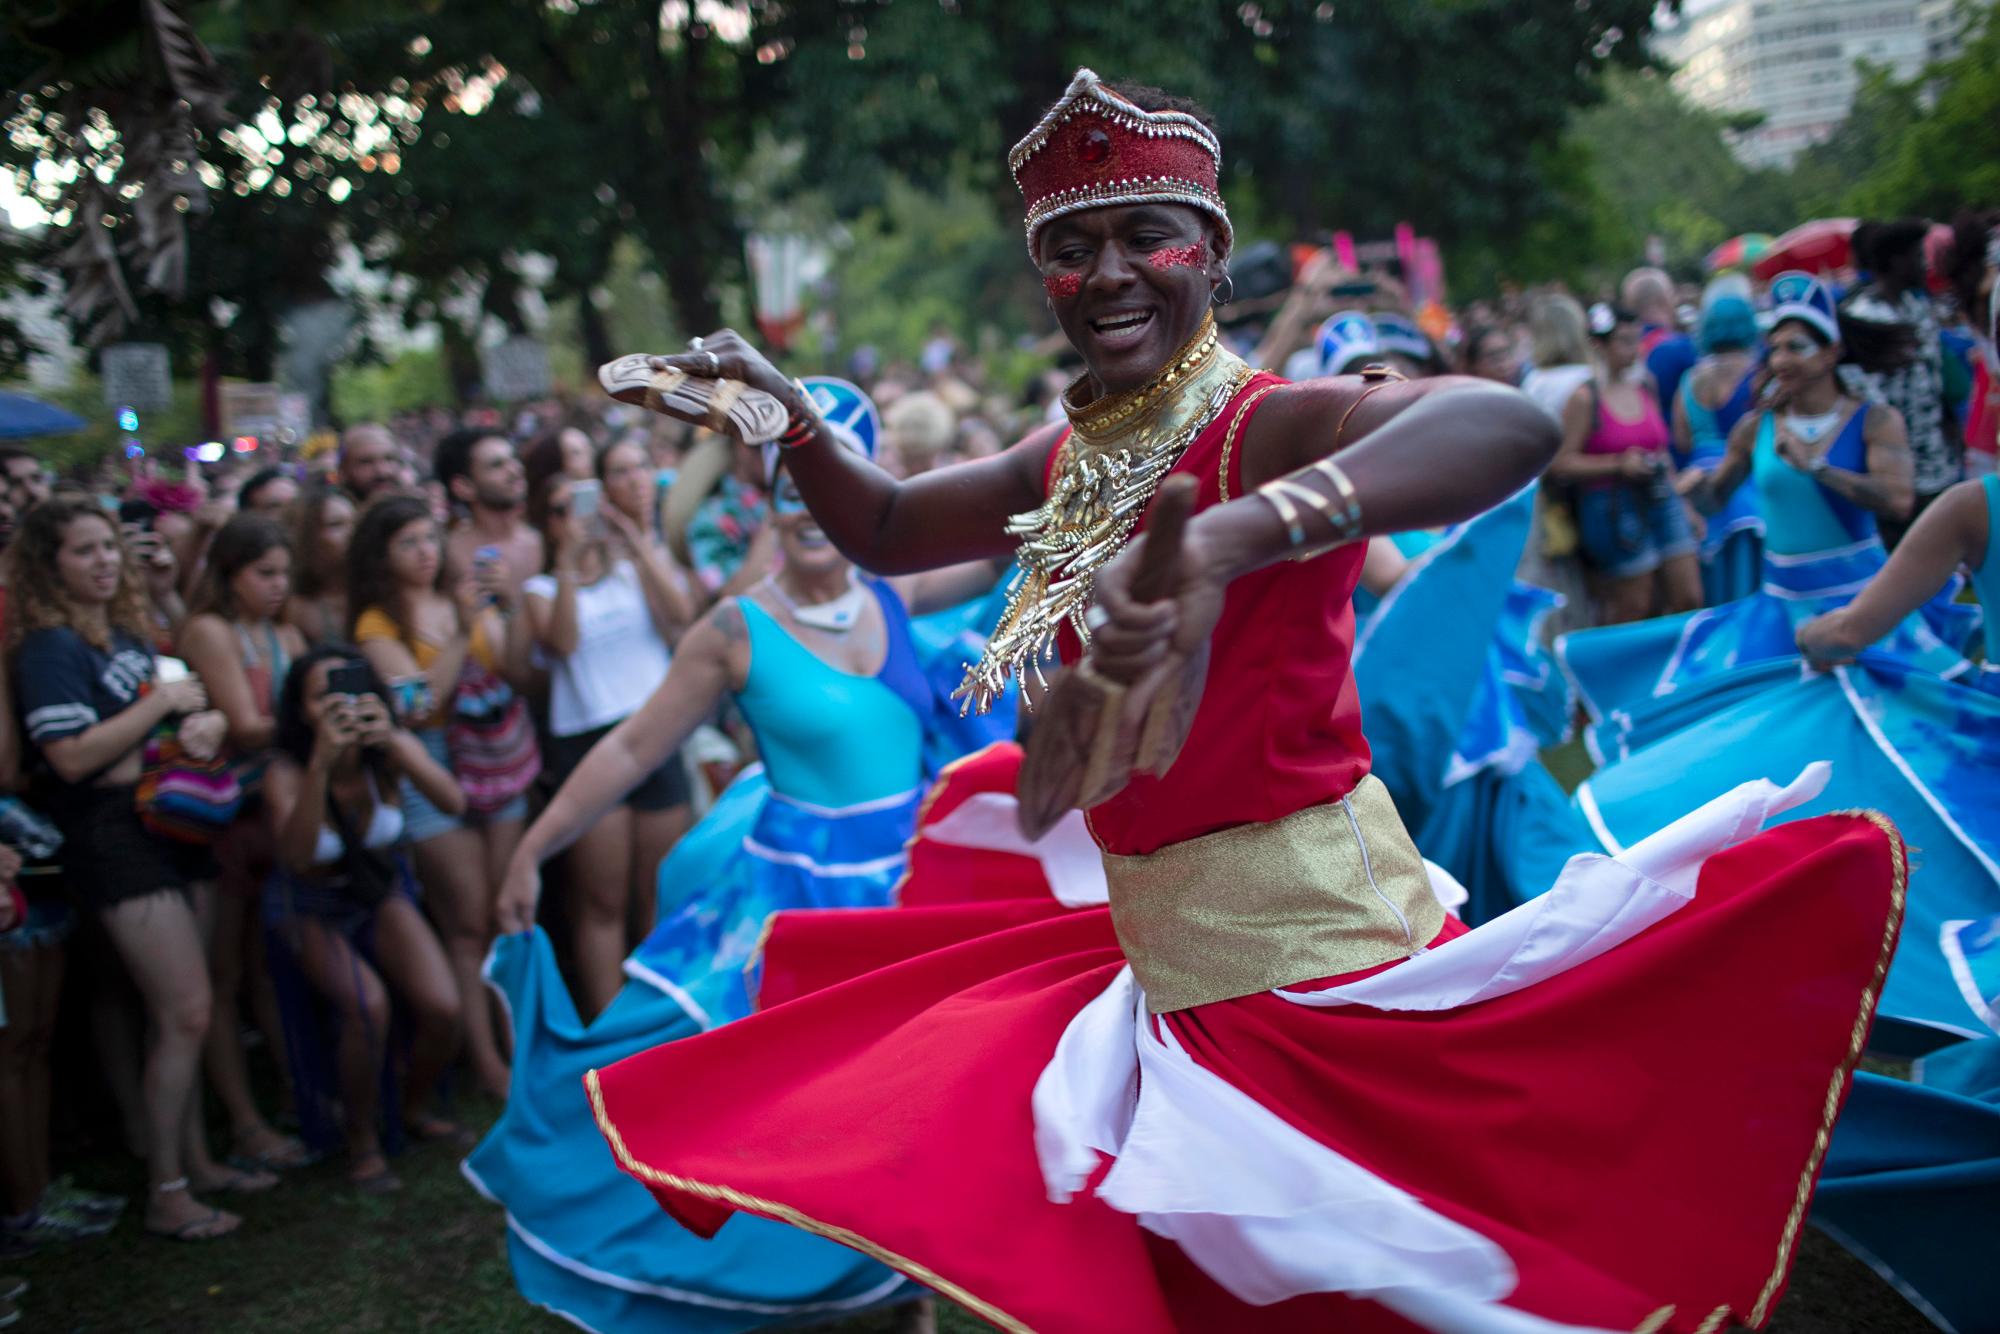 Un hombre baila durante la fiesta callejera “Tambores de Olokun” en Río de Janeiro, Brasil, el sábado 15 de febrero de 2020. Miles han comenzado a asistir a las populares fiestas callejeras antes del famoso festival de carnaval que comienza el 21 de febrero (AP Foto / Silvia Izquierdo)